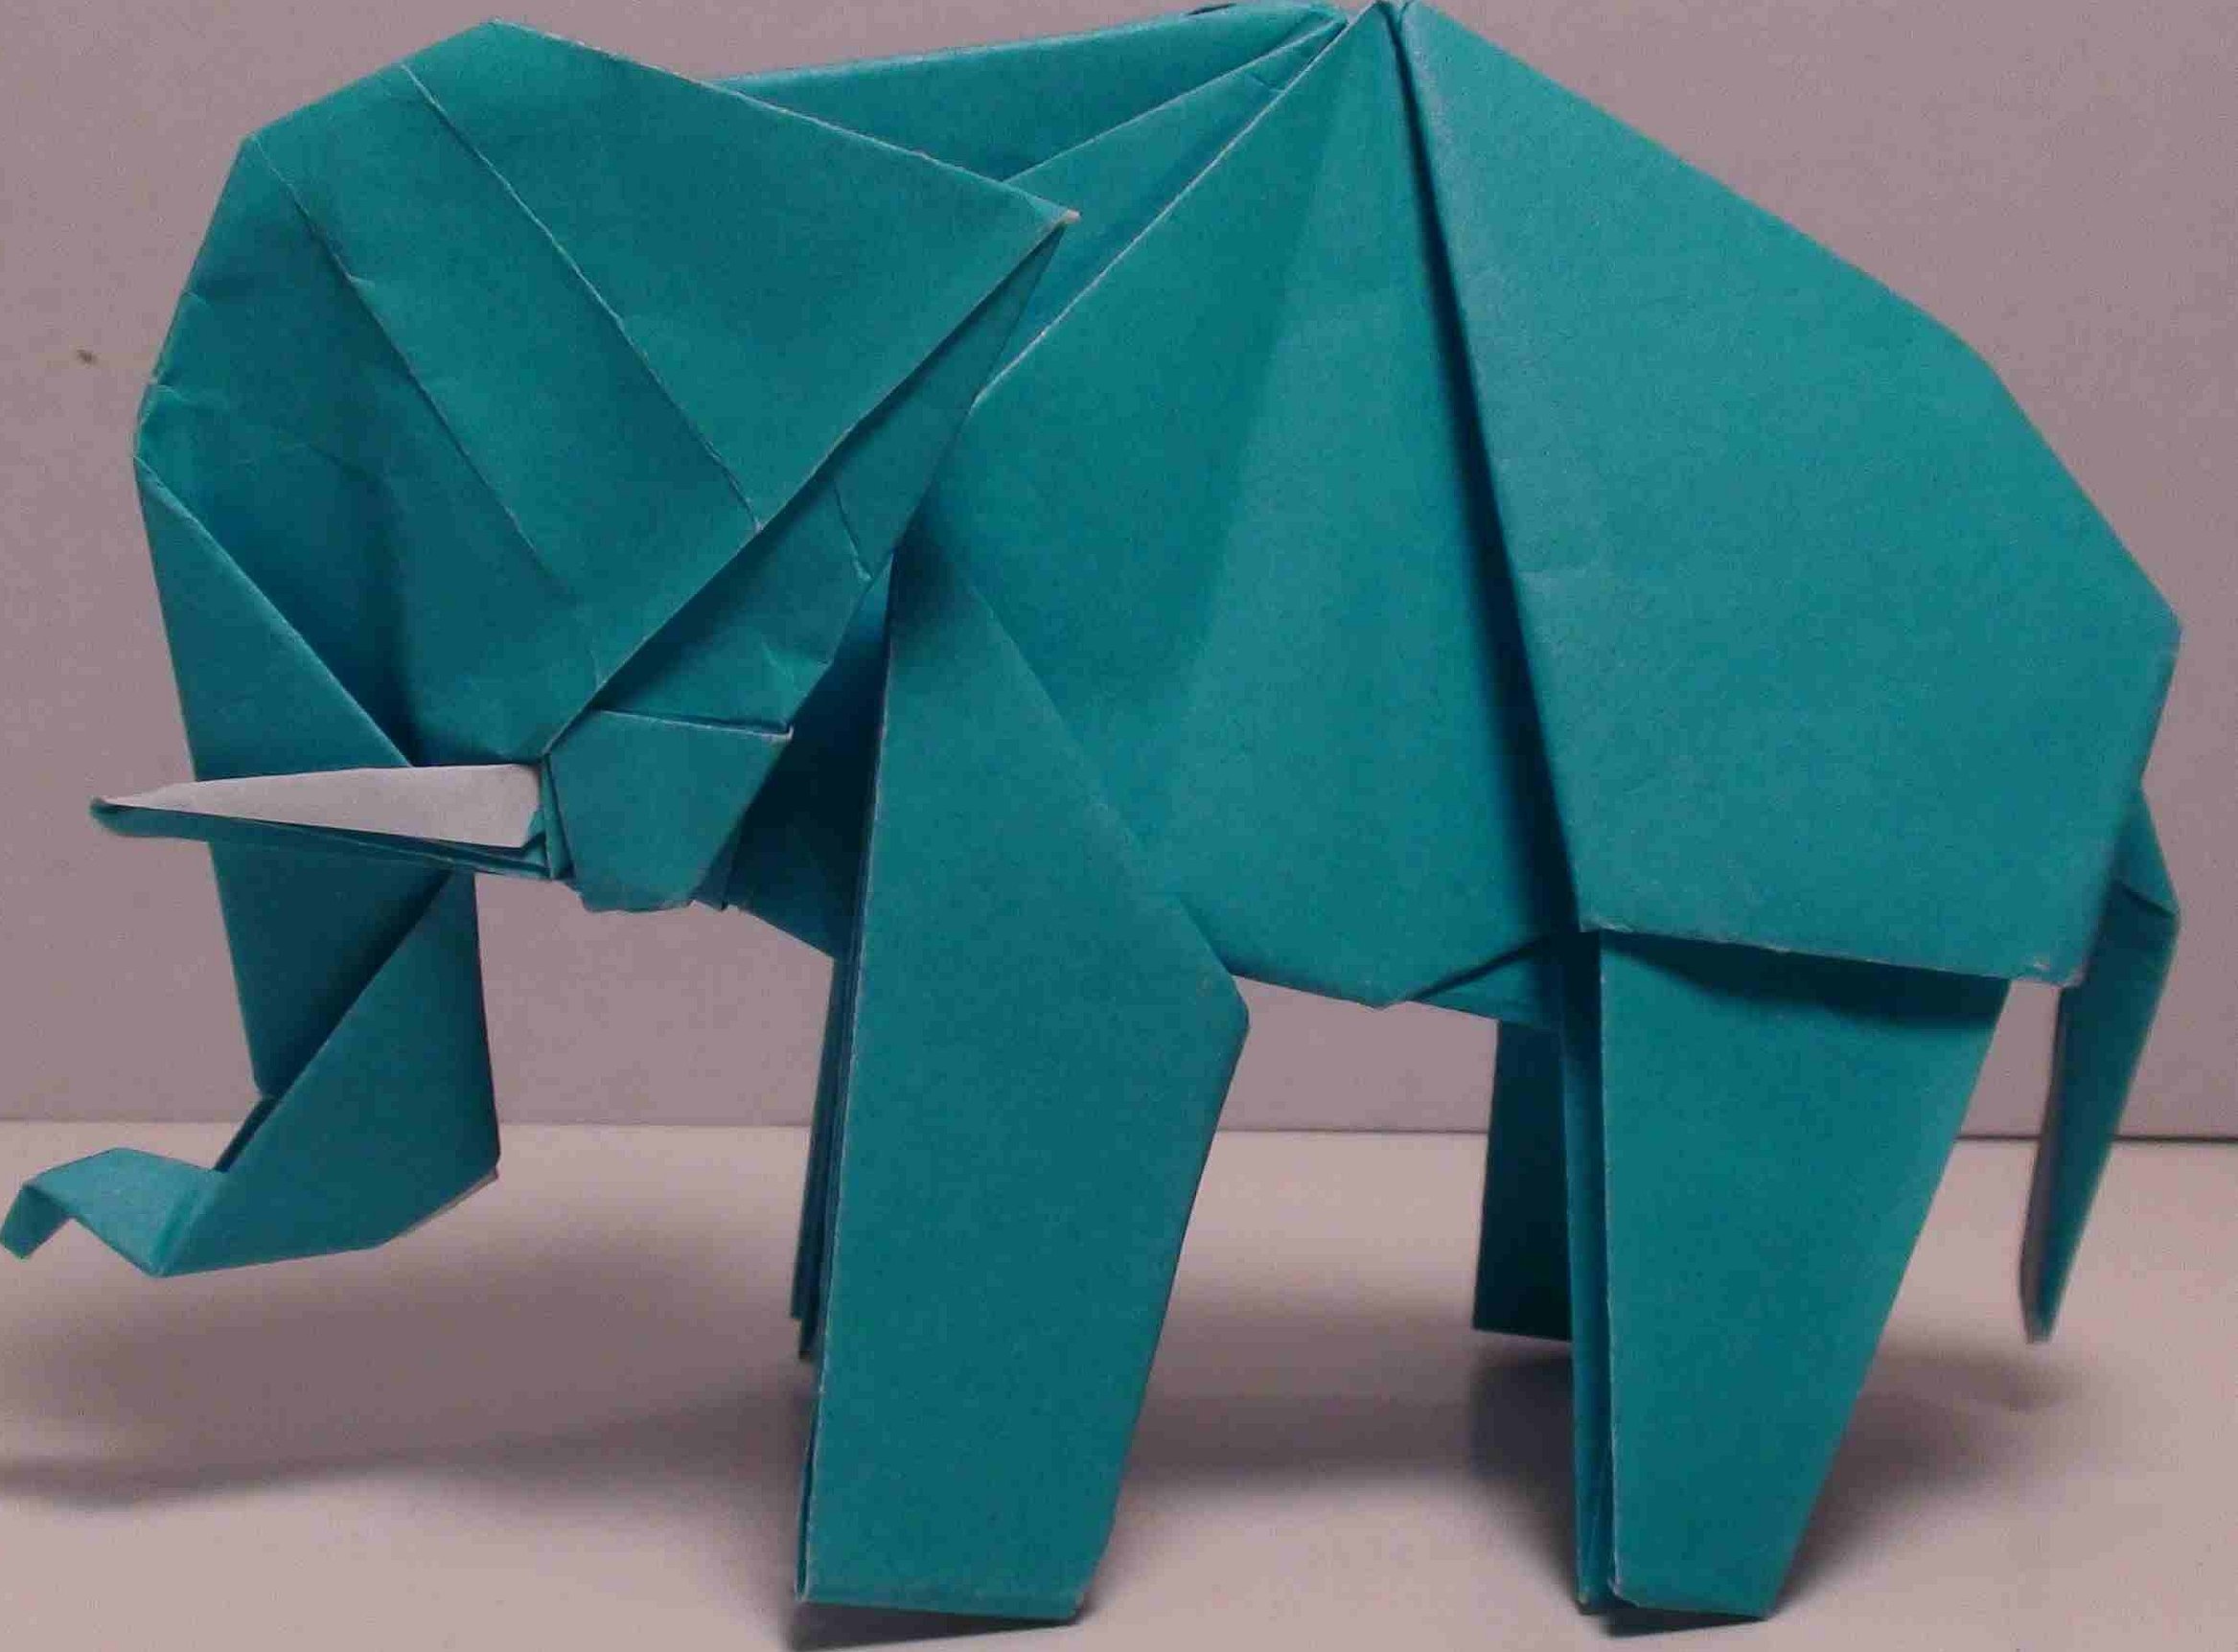 Динозавр из бумаги оригами